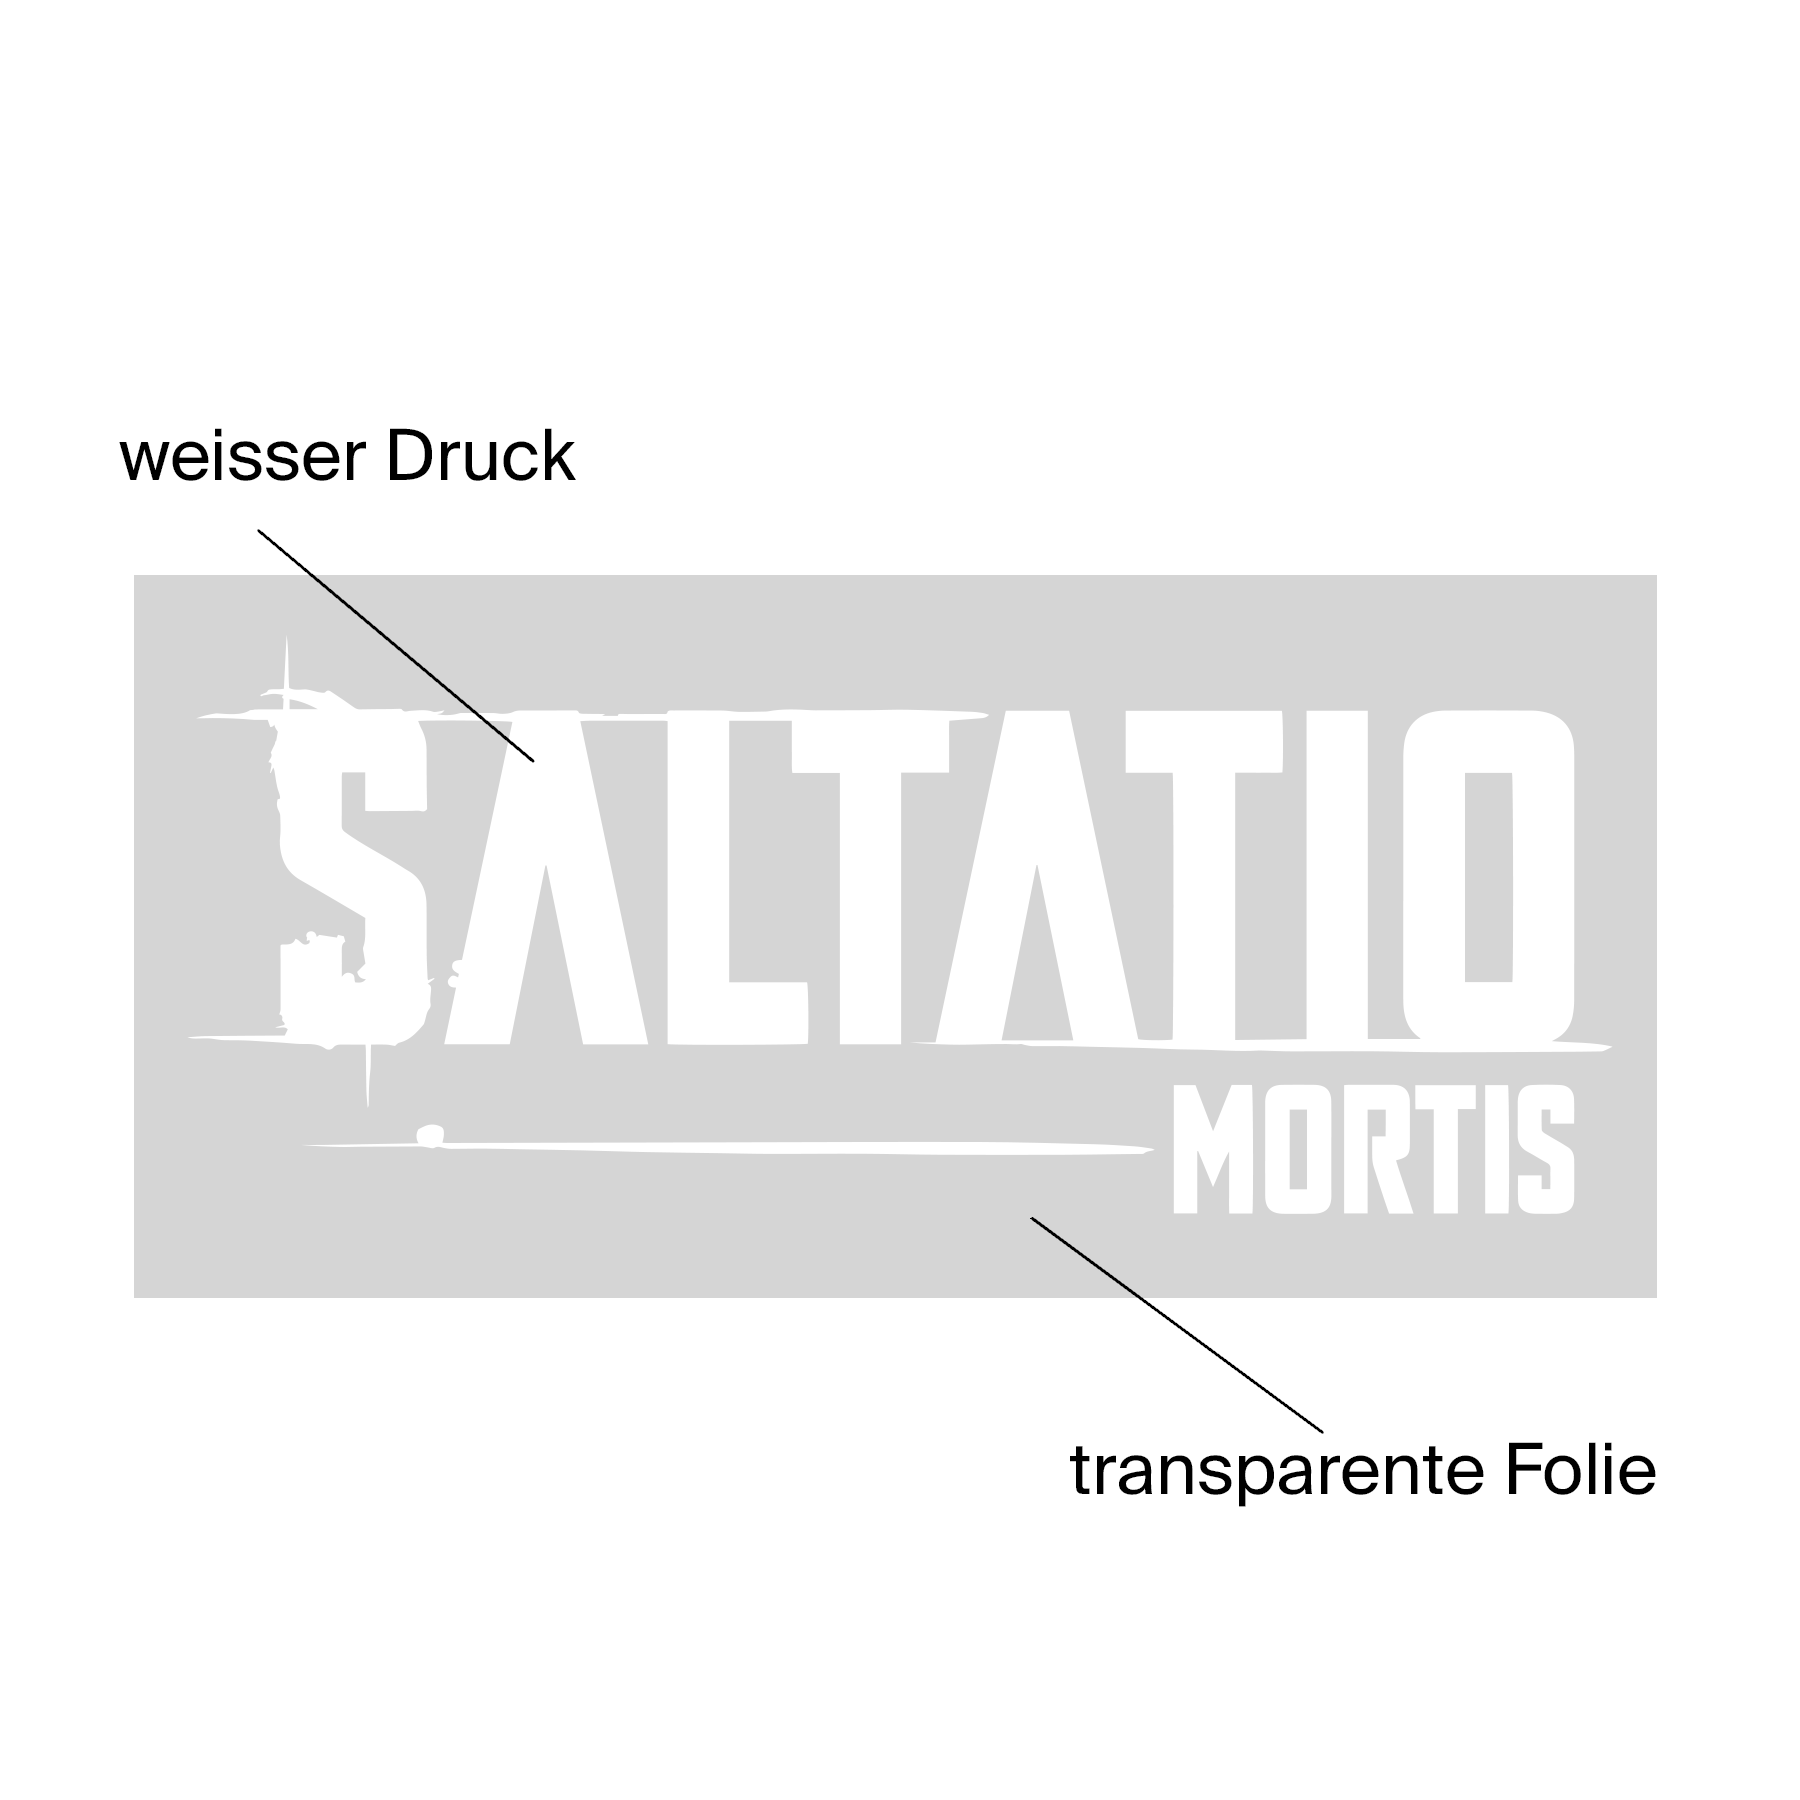 https://images.bravado.de/prod/product-assets/saltatio-mortis/saltatio-mortis/products/501666/web/370637/image-thumb__370637__3000x3000_original/Saltatio-Mortis-Saltatio-Mortis-Aufkleber-weiss-501666-370637.png